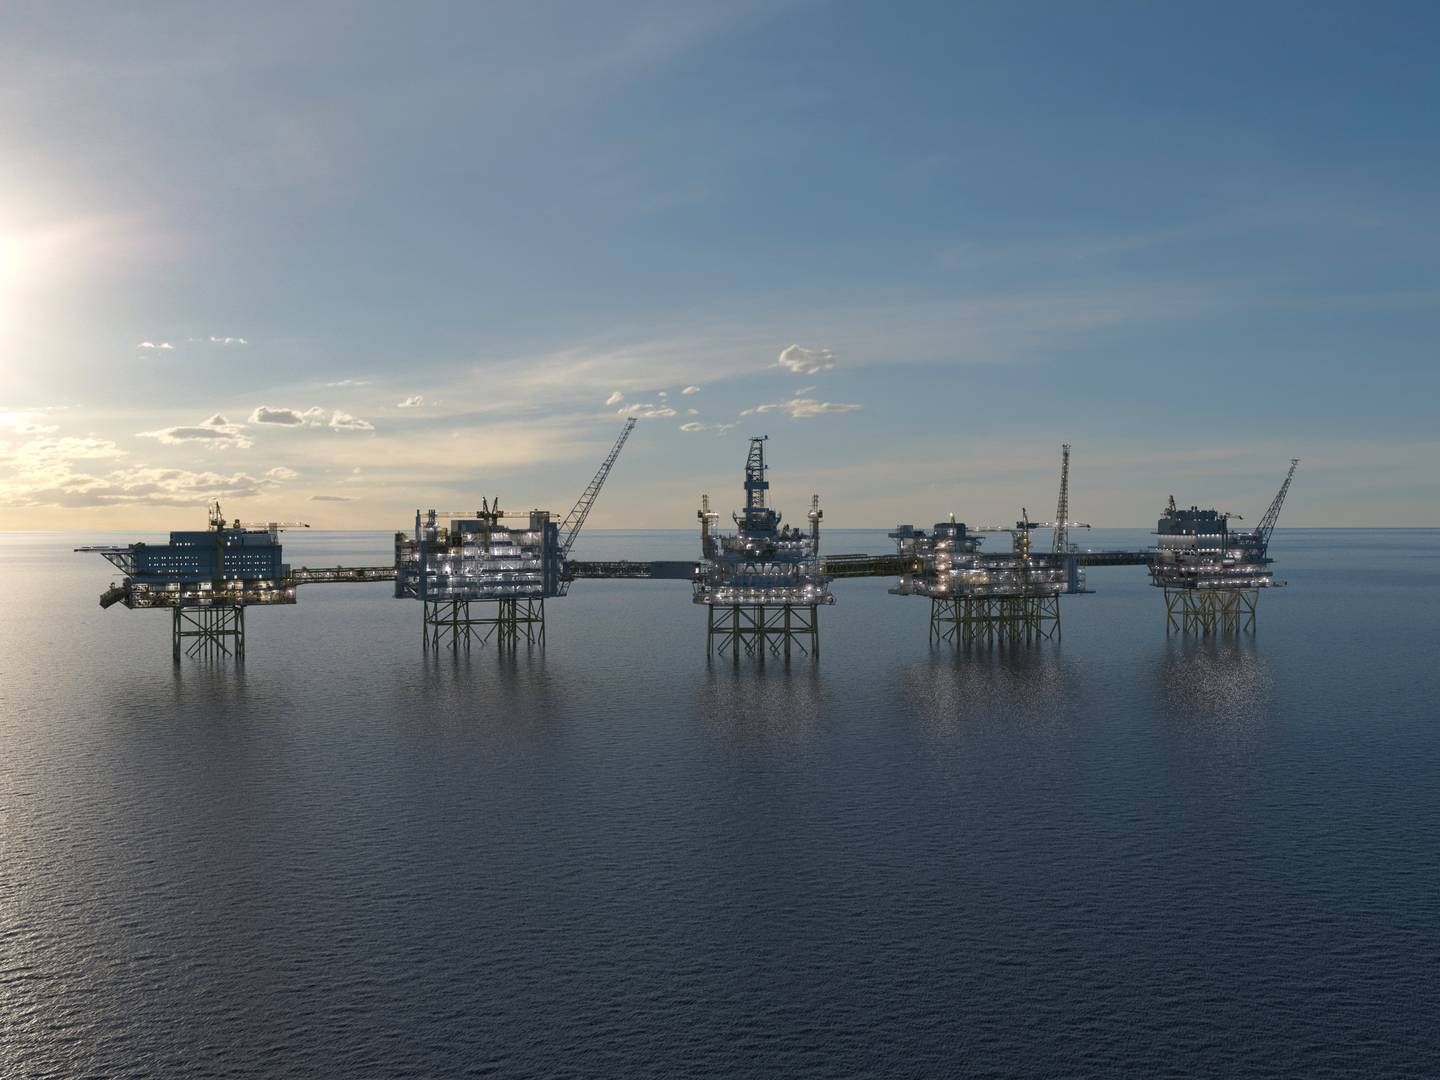 ROPER VARSKU: Offshore Norge vil diskutere studiesituasjonen for petroleumsfag med olje- og energiminister Terje Aasland. Bildet er Johan Sverdrup-feltet i Nordsjøen | Foto: Equinor